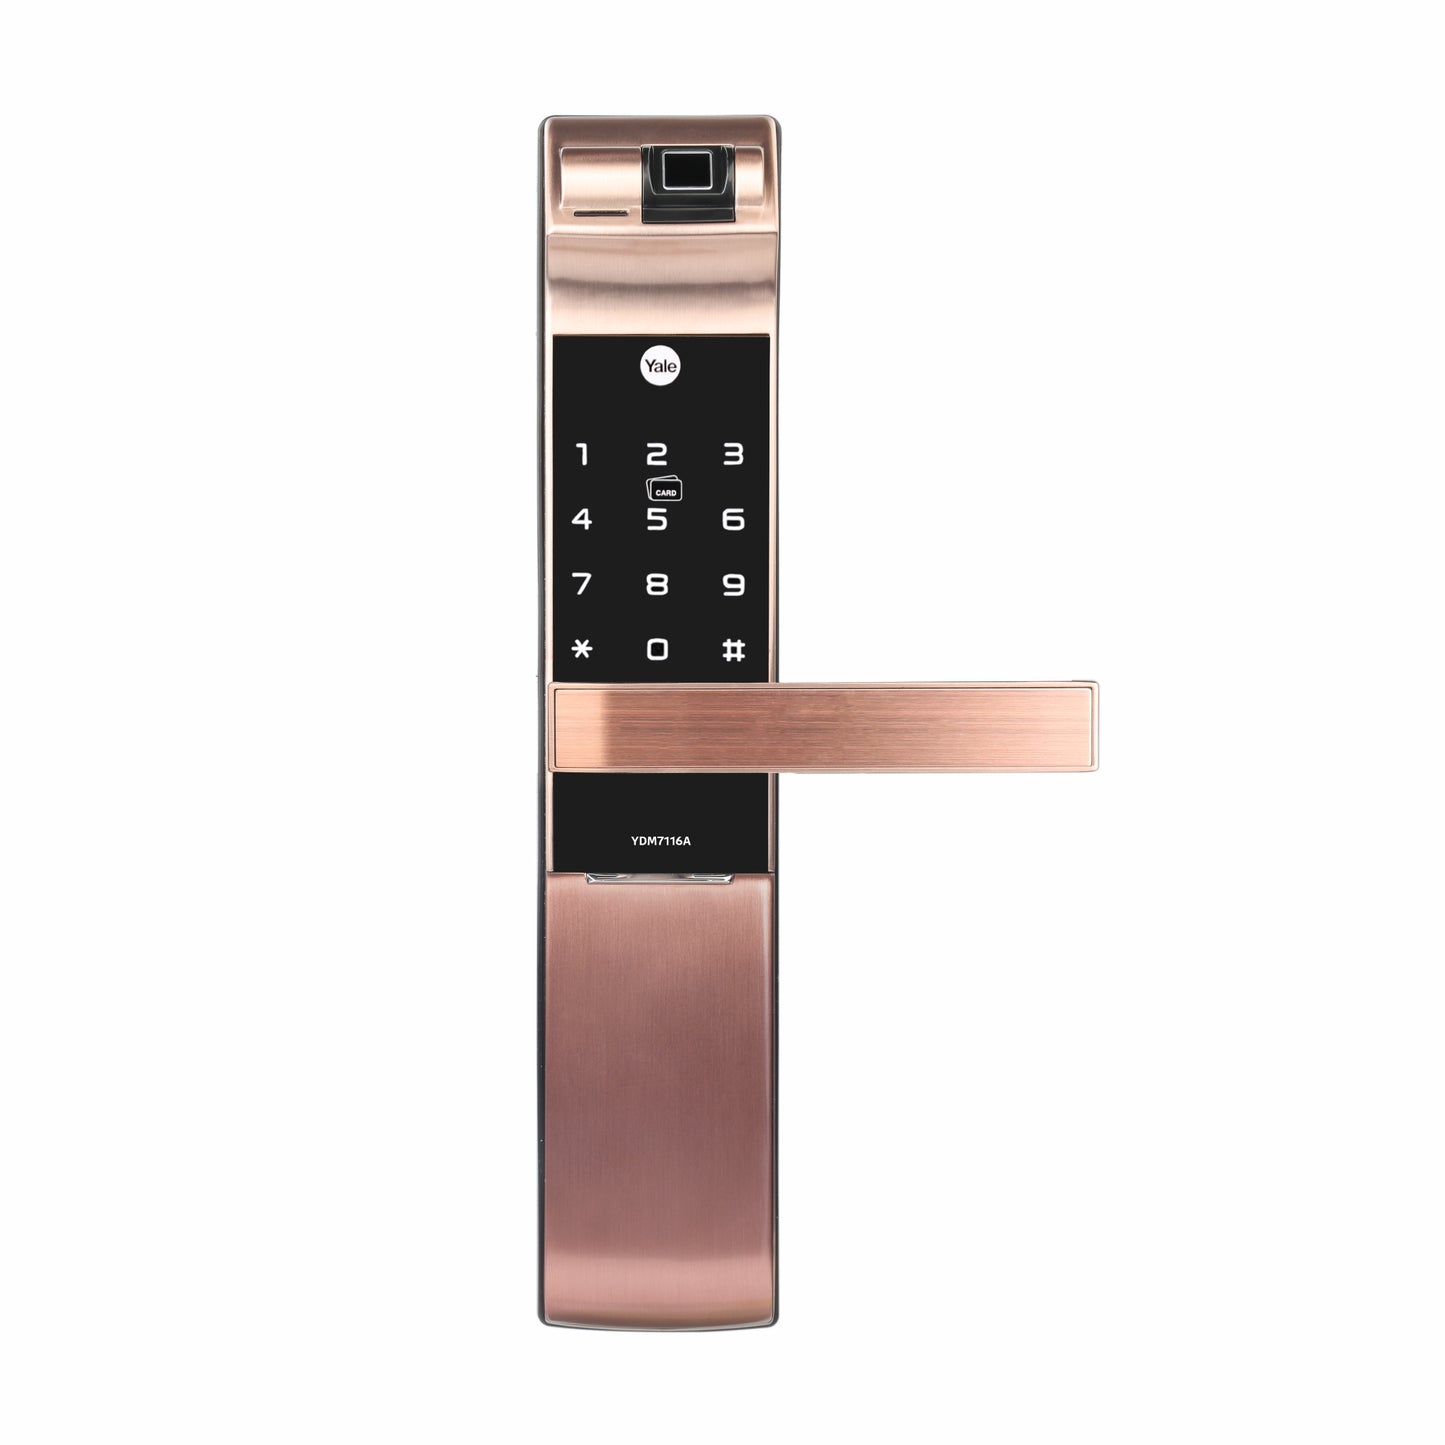 YDM 7116A Smart Lock, Red Bronze